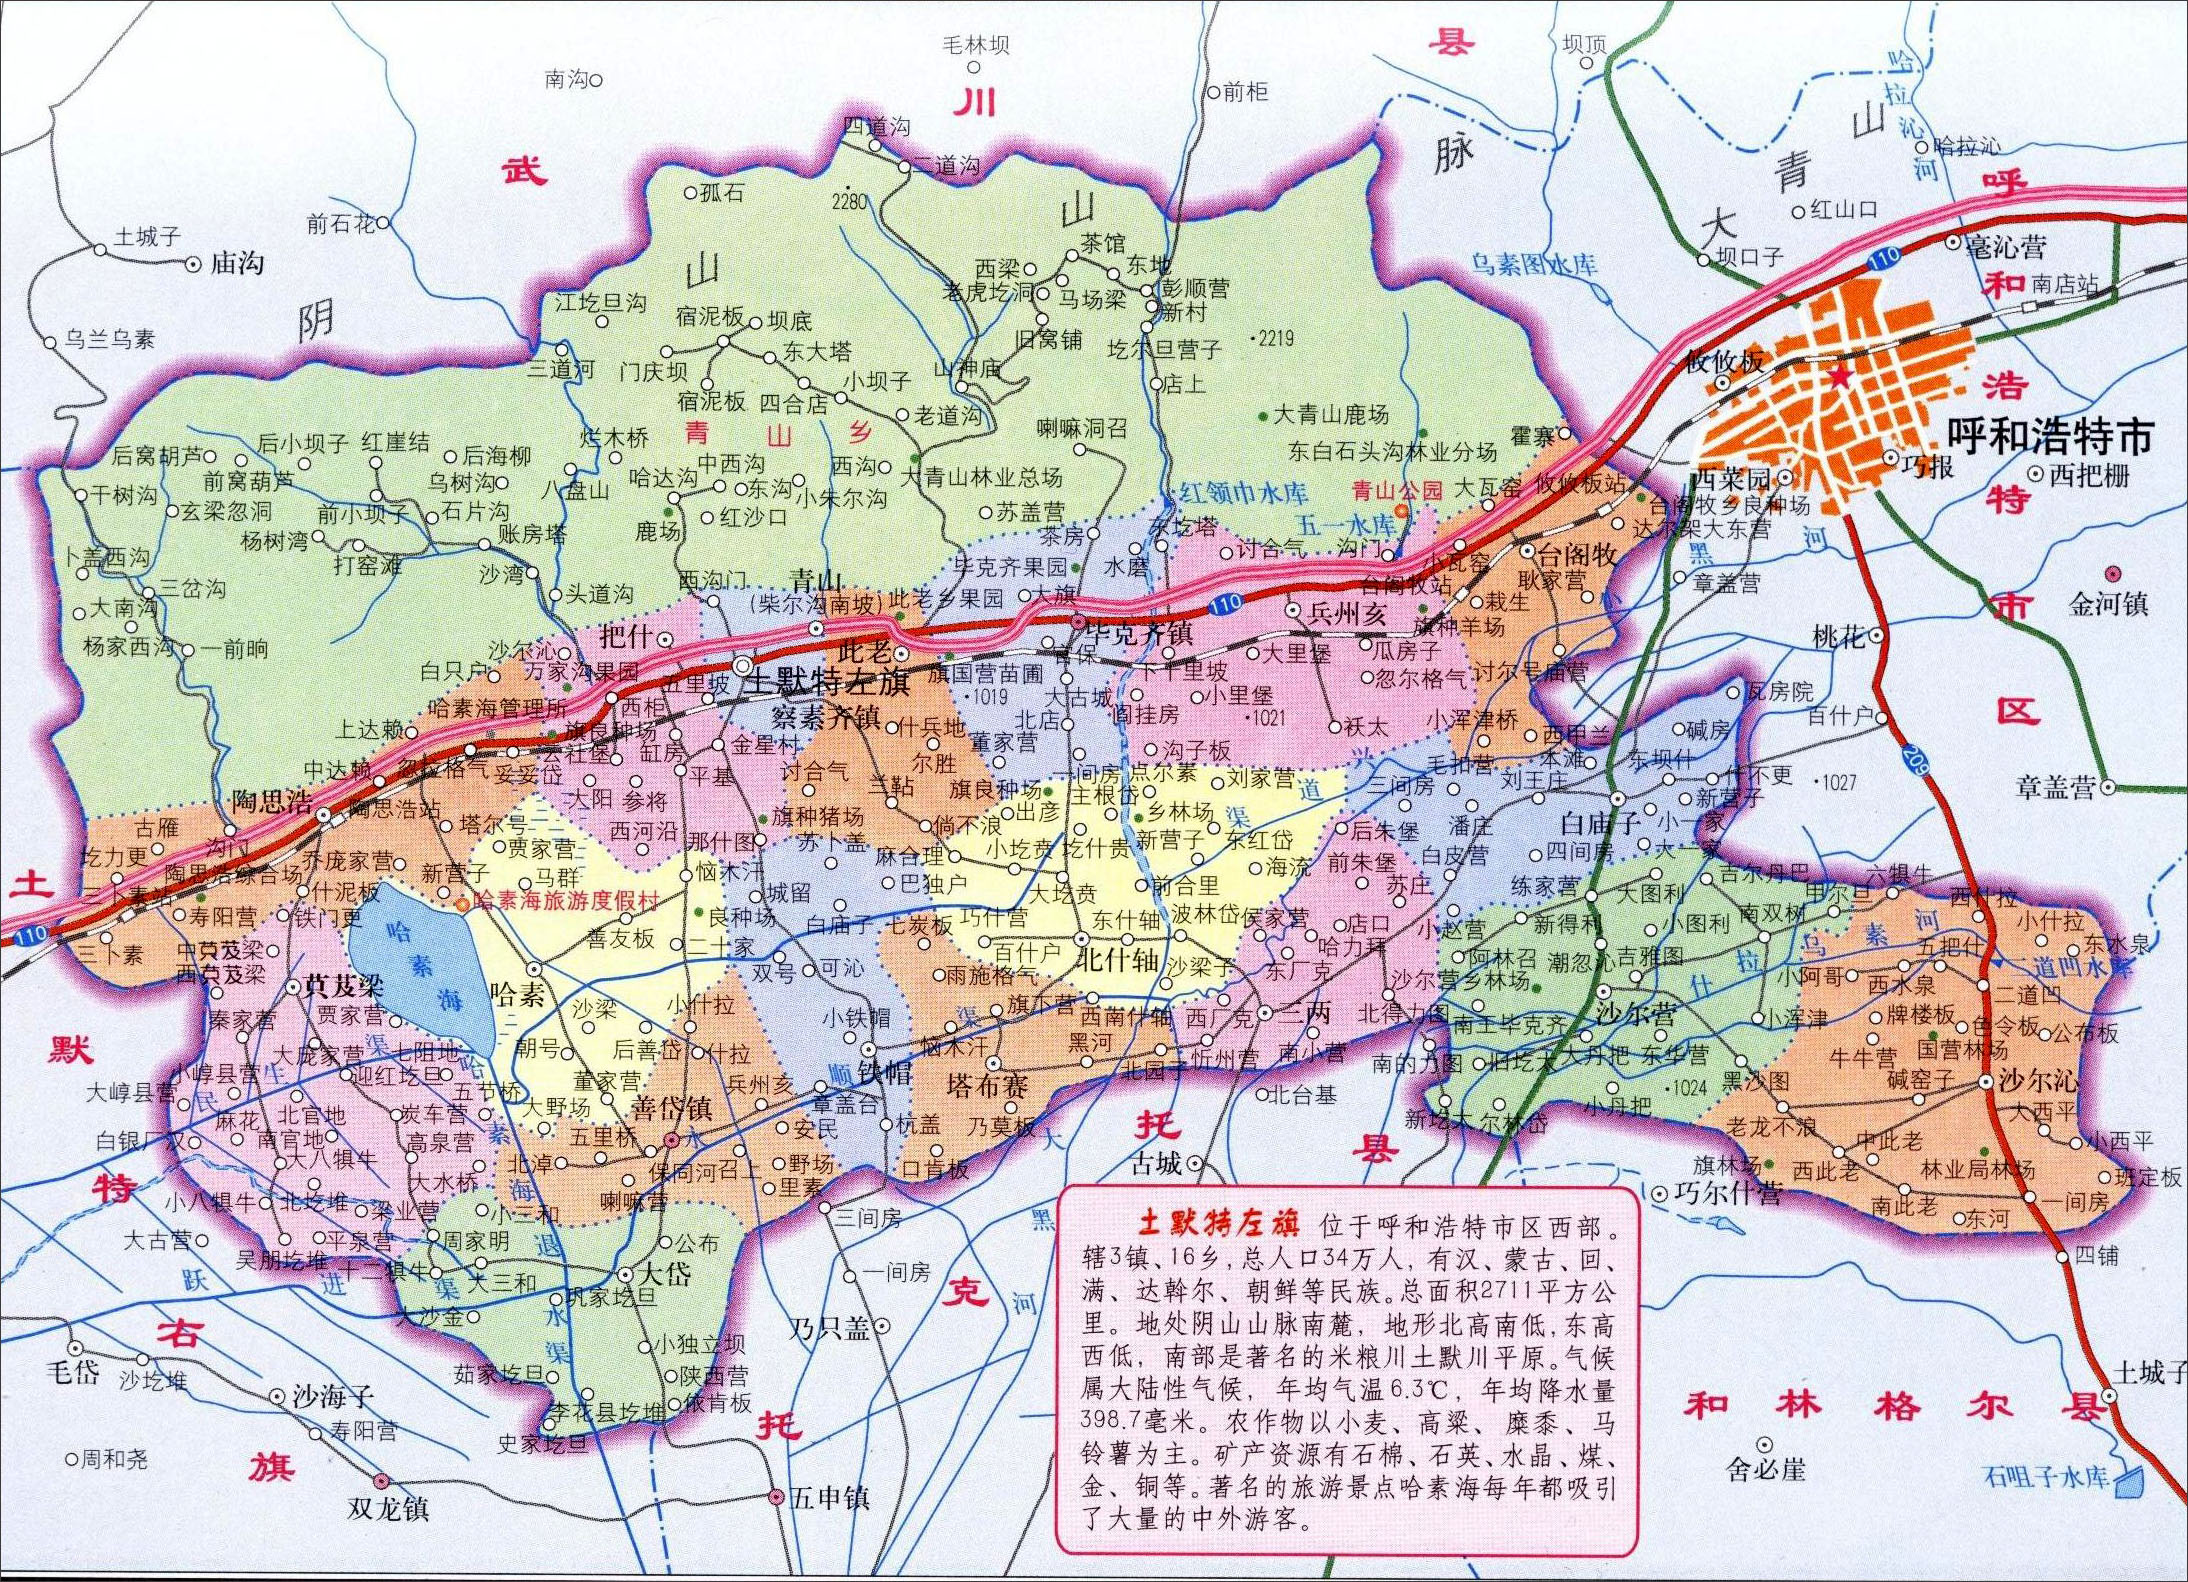 中国地图 内蒙古 呼和浩特 >> 土默特左旗地图图片